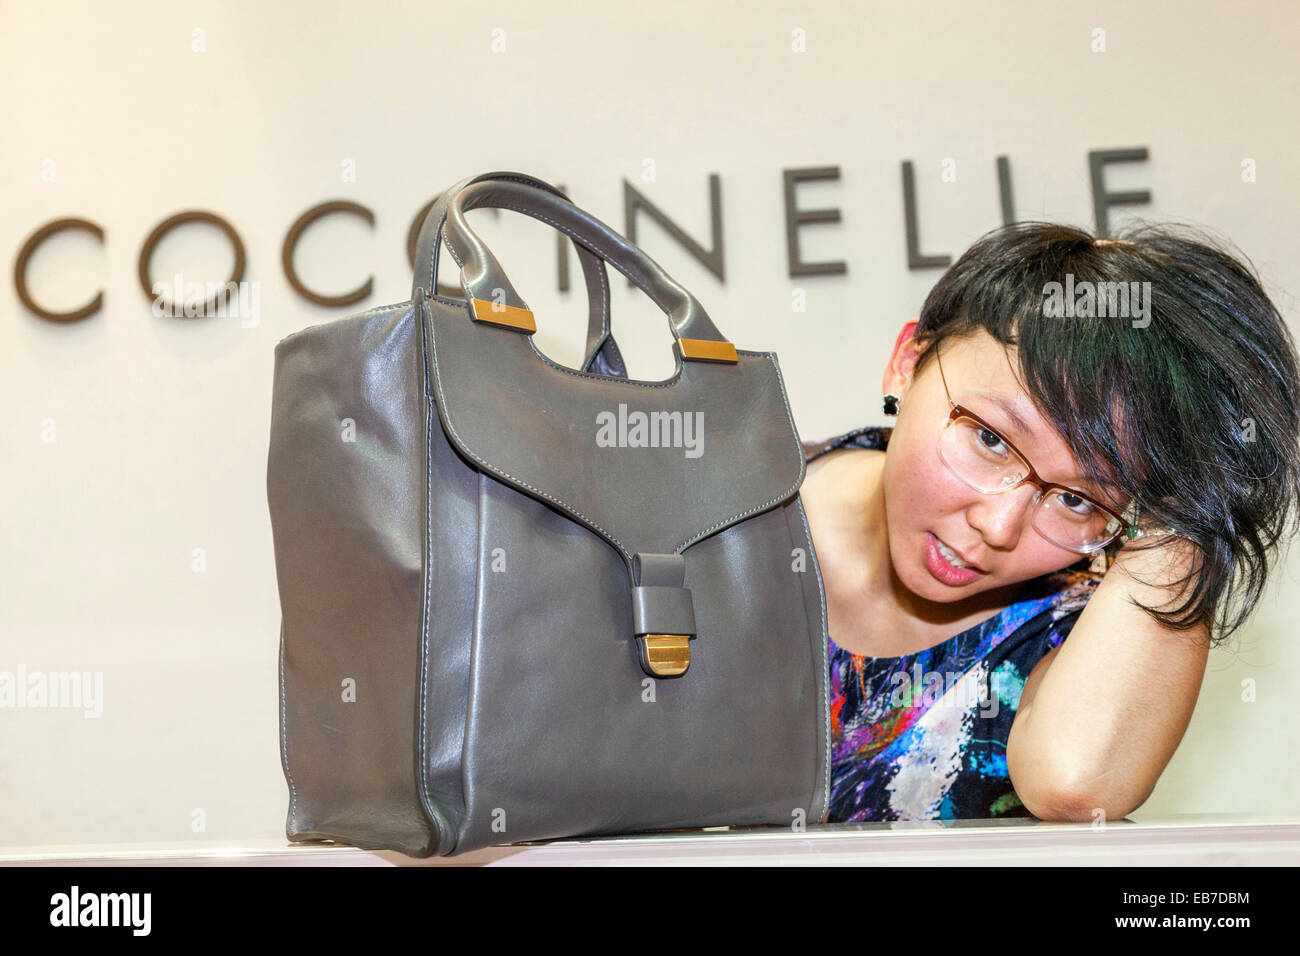 Jeune femme asiatique avec un sac à main Coccinelle République Tchèque Banque D'Images